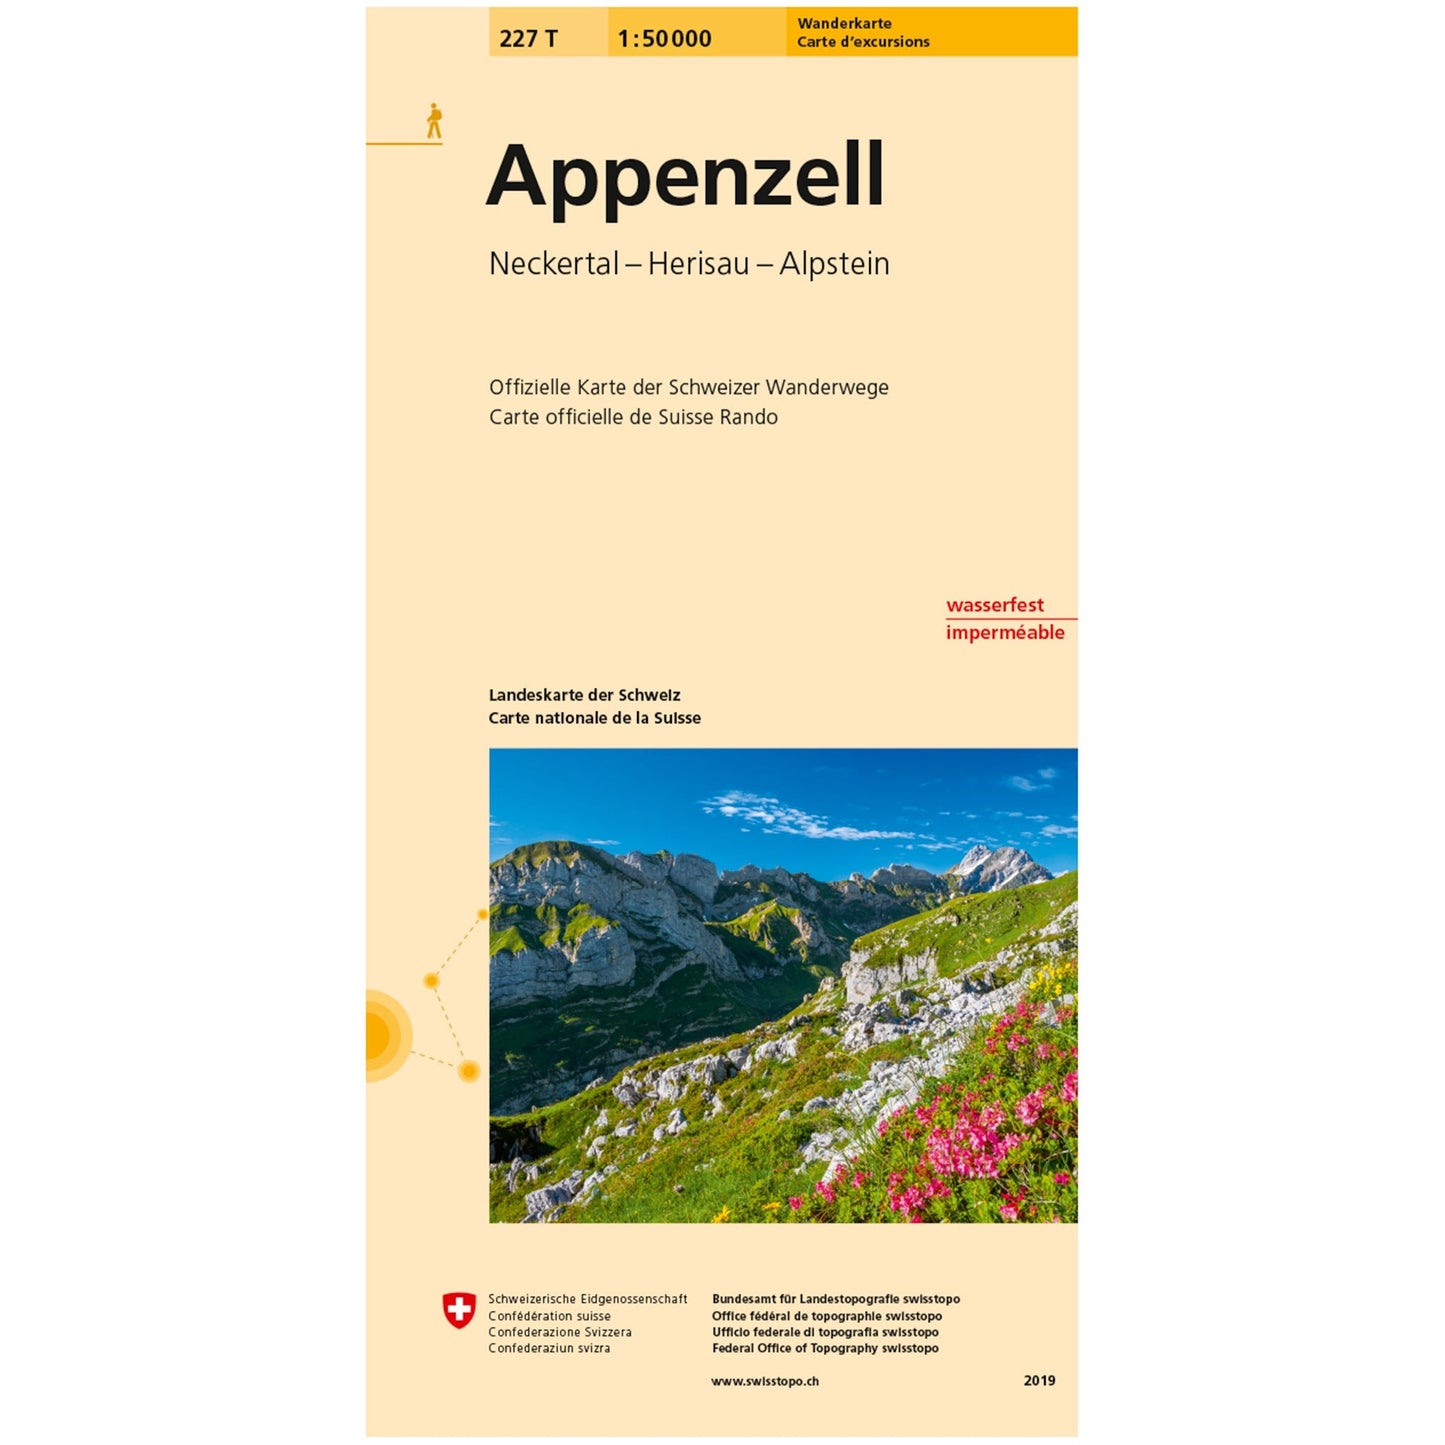 Wanderkarten Swiss Topo 1:50000 Wanderkarten Swisstopo 227T Appenzell 